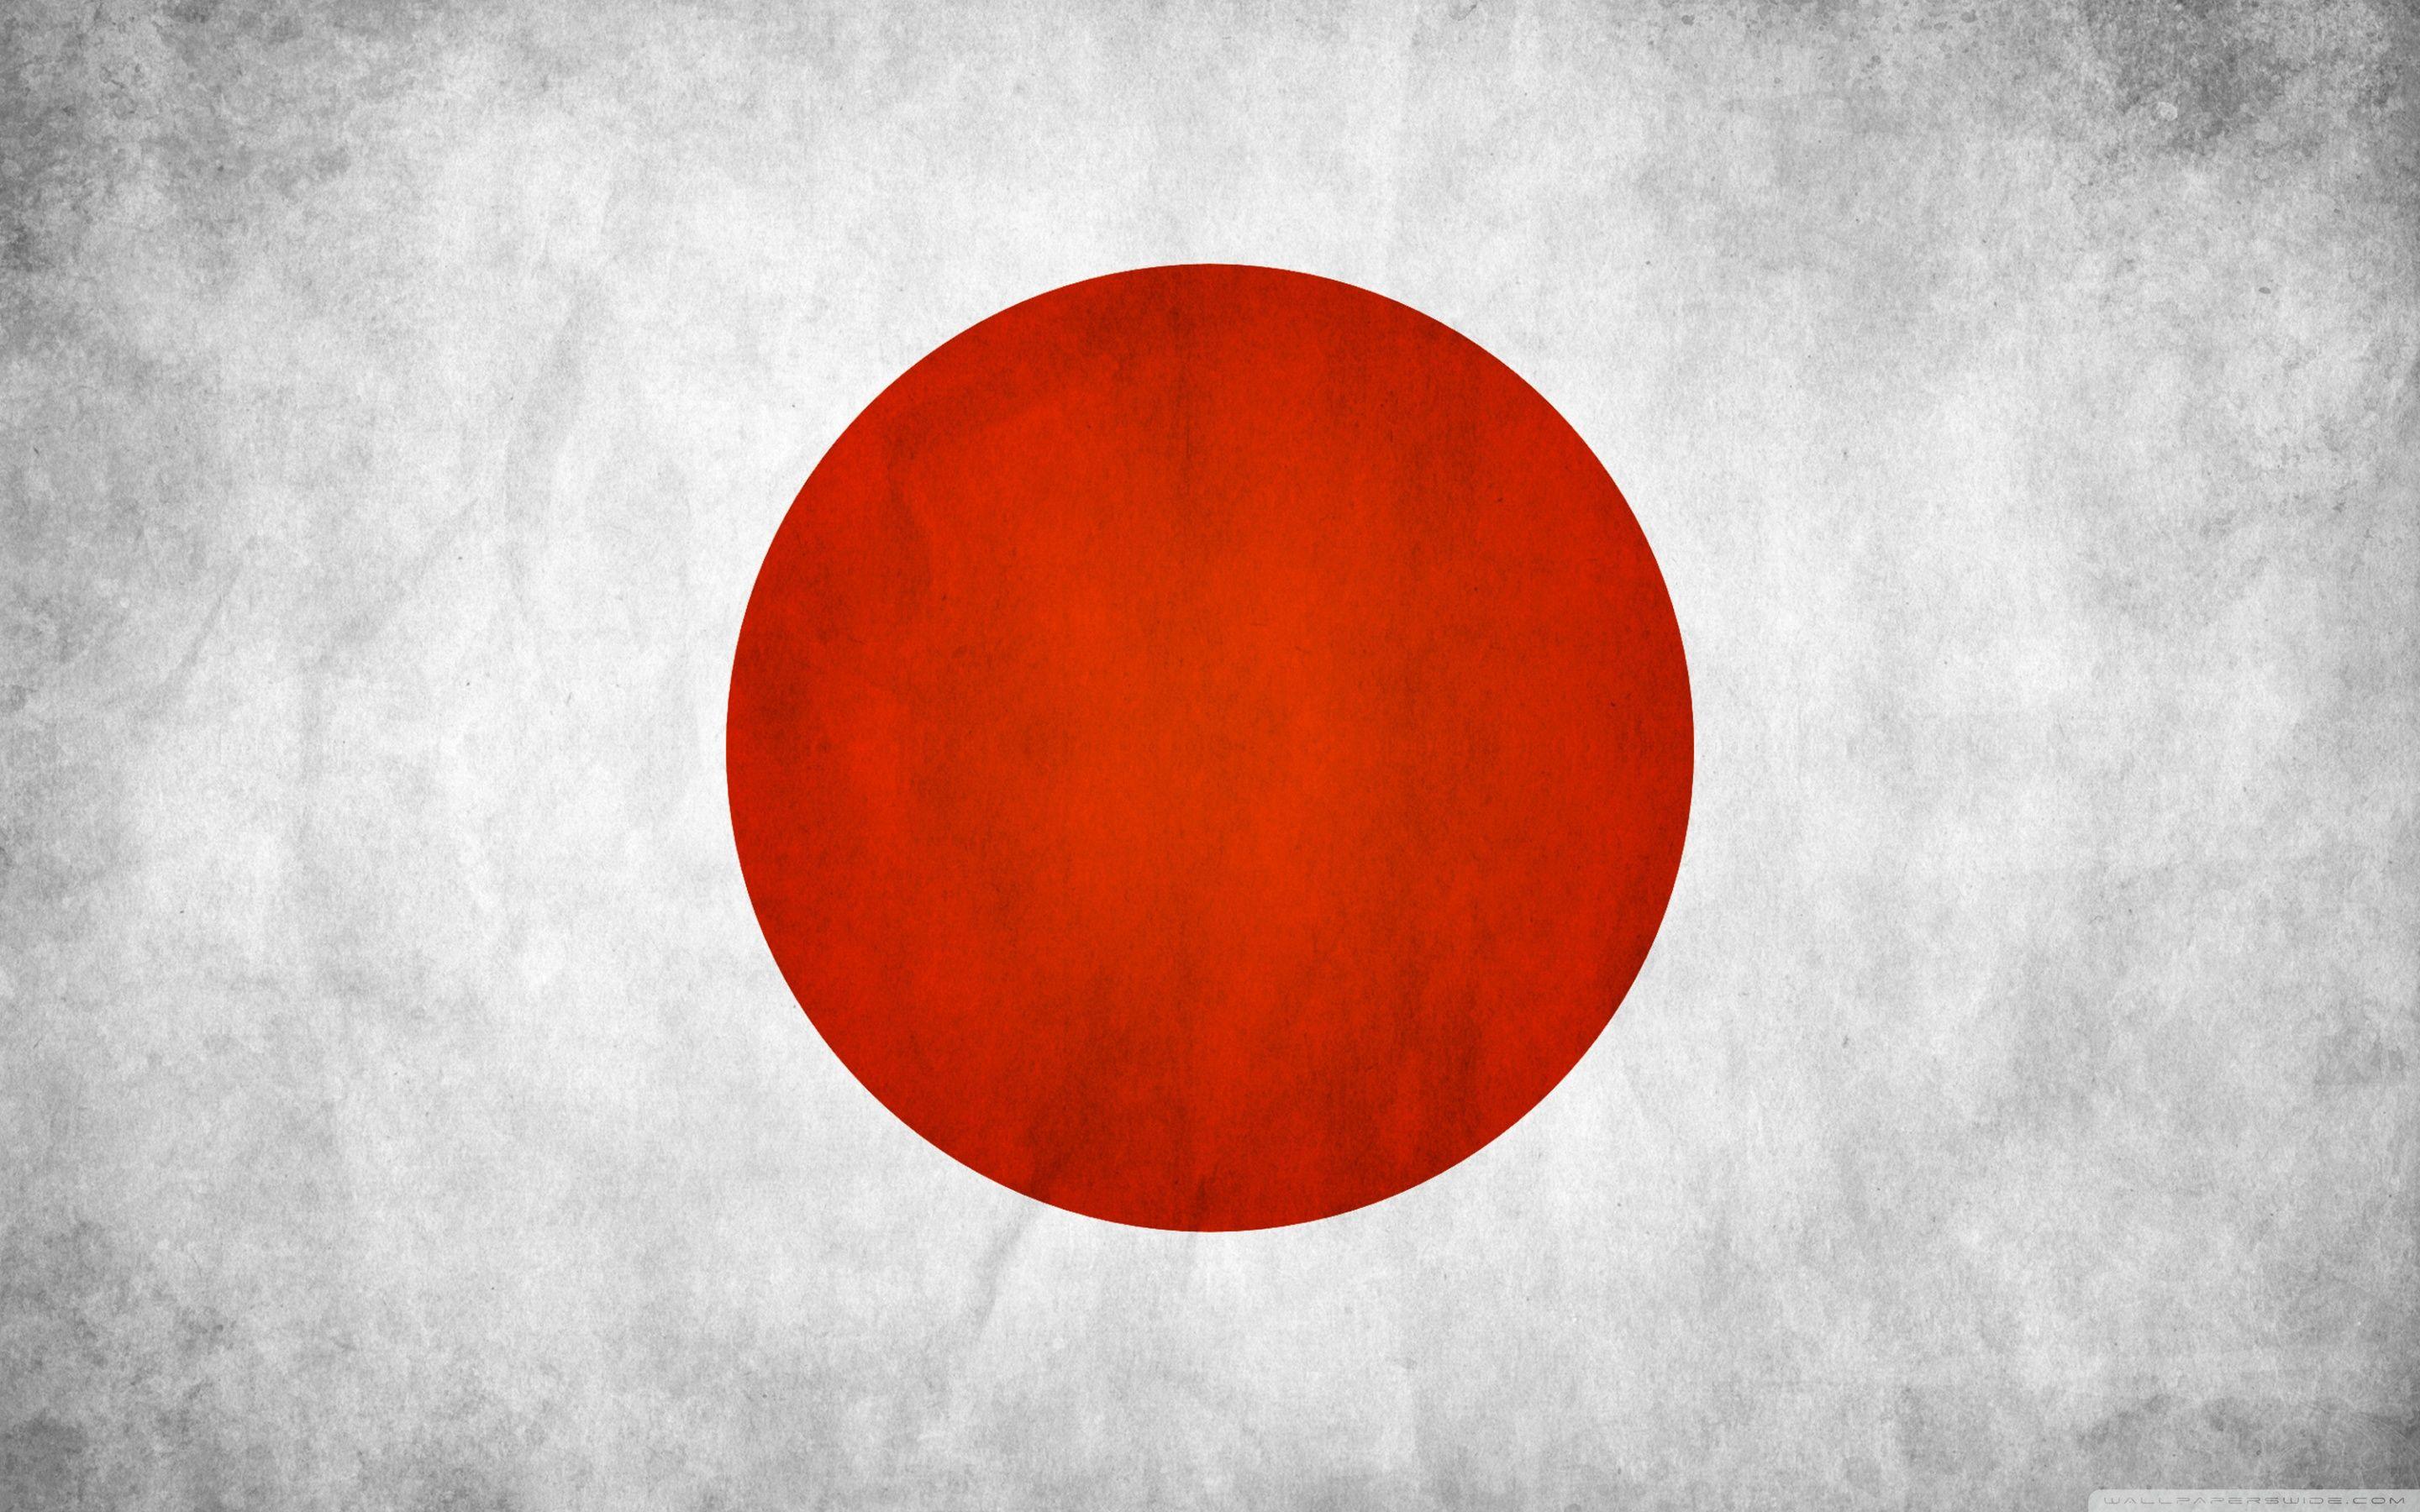 Japanese Flag Image